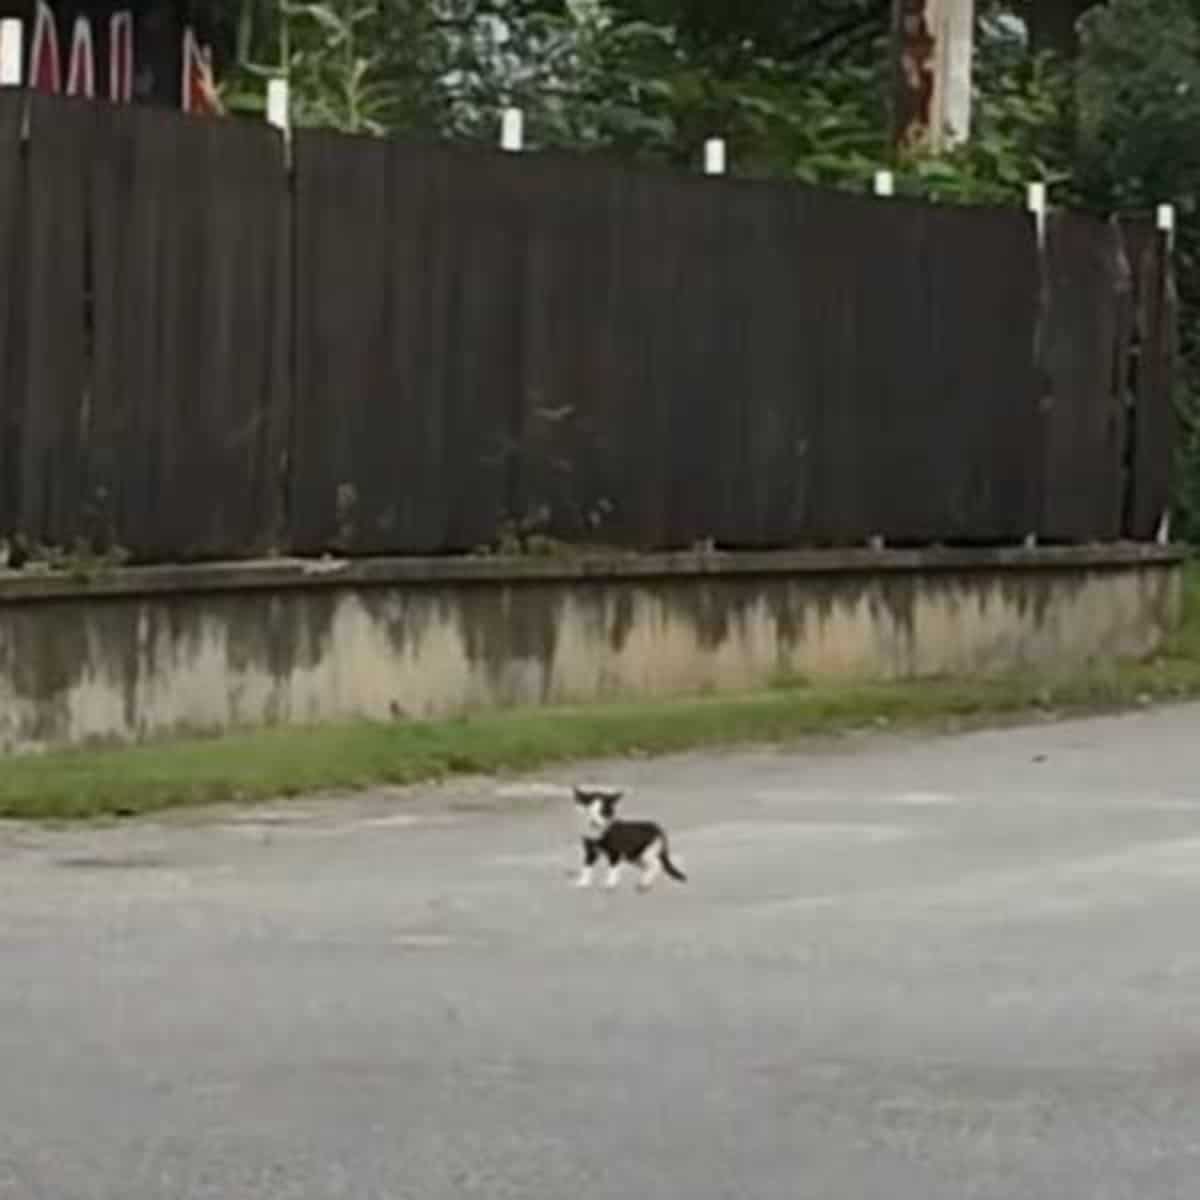 a little kitten is running down the street